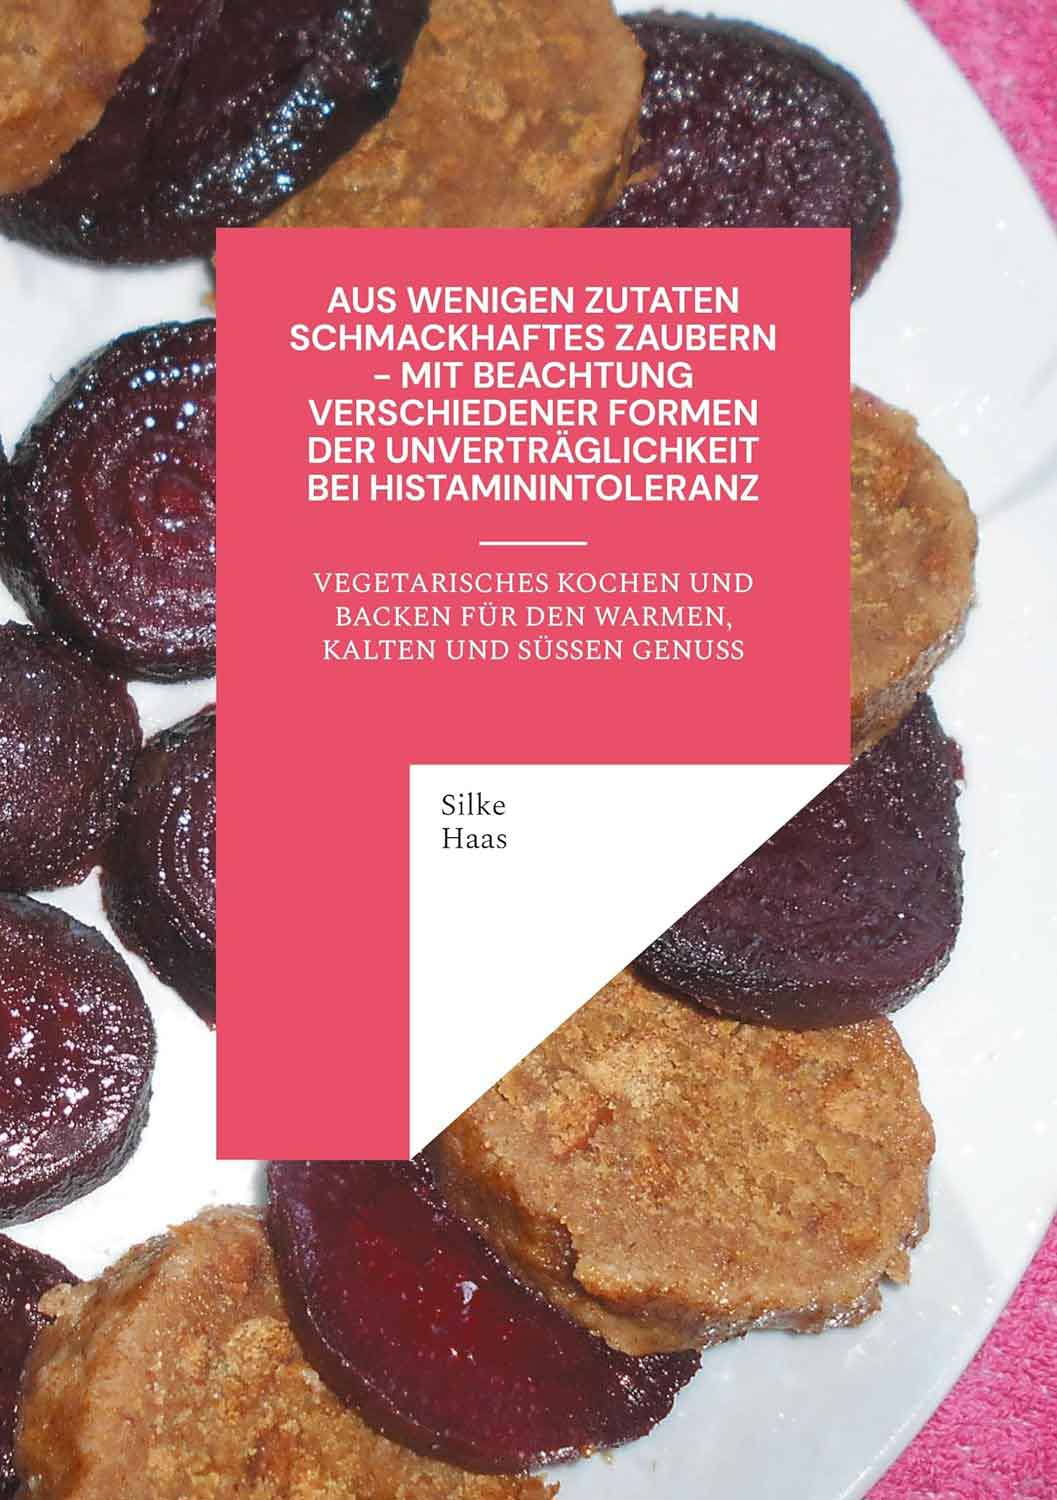 Lesetipps für Gütersloh: neu veröffentlichtes Kochbuch und Backbuch mit histaminarmen, vegetarischen sowie teils veganen Rezepten